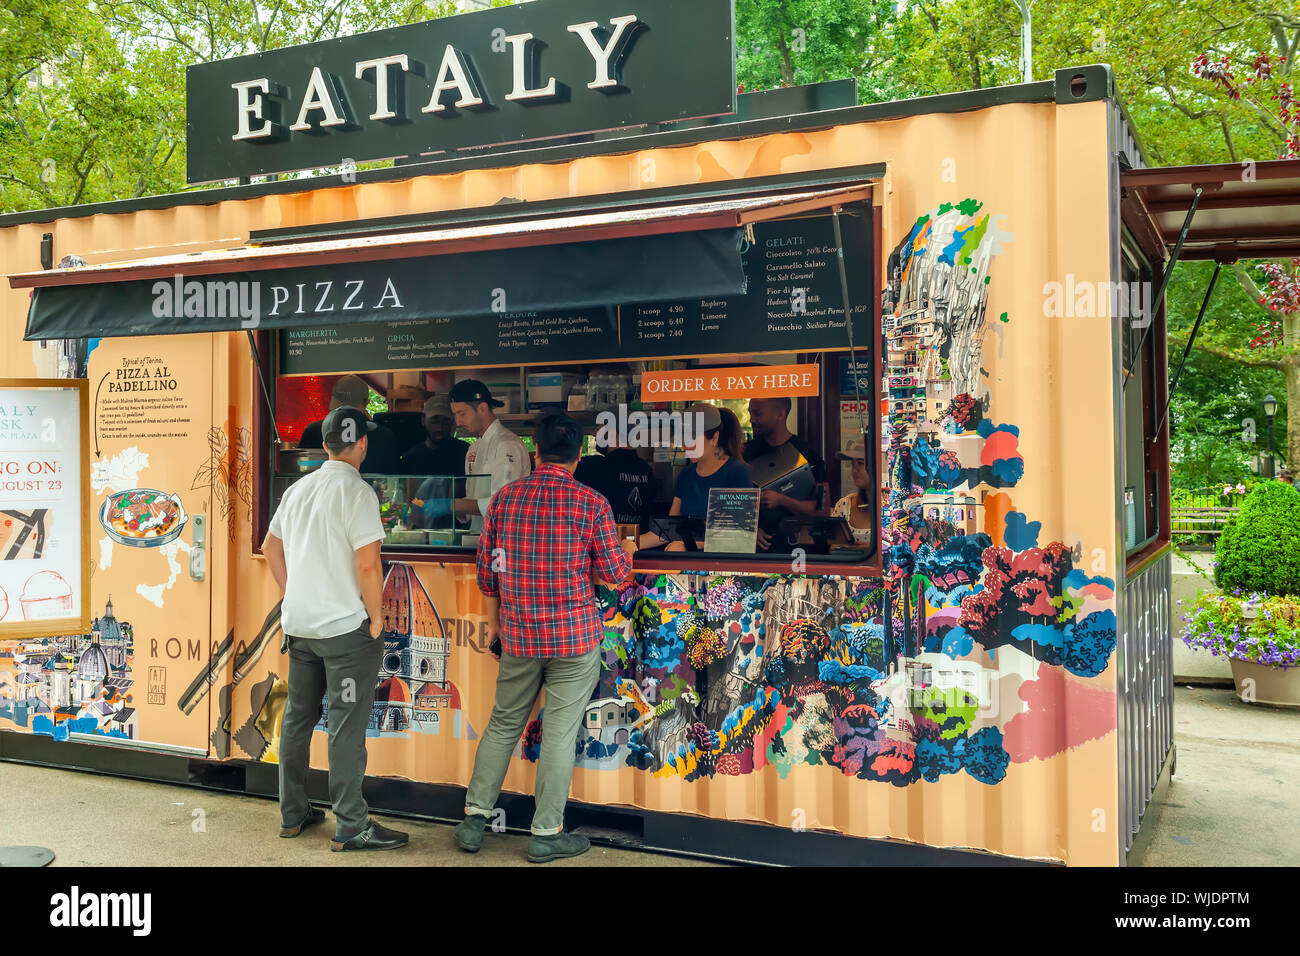 Le nouveau kiosque Eataly à Flatiron Plaza, en face de l'Italien Eataly Emporium, le jour de l'ouverture à New York, le Vendredi, Août 23, 2019. Le nouveau kiosque, nommé de façon appropriée, "Eataly à Flatiron Plaza", sert des pizzas al Padellino et gelato. Pizza al Padellino est une spécialité de la région du Piémont en Italie. (© Richard B. Levine) Banque D'Images